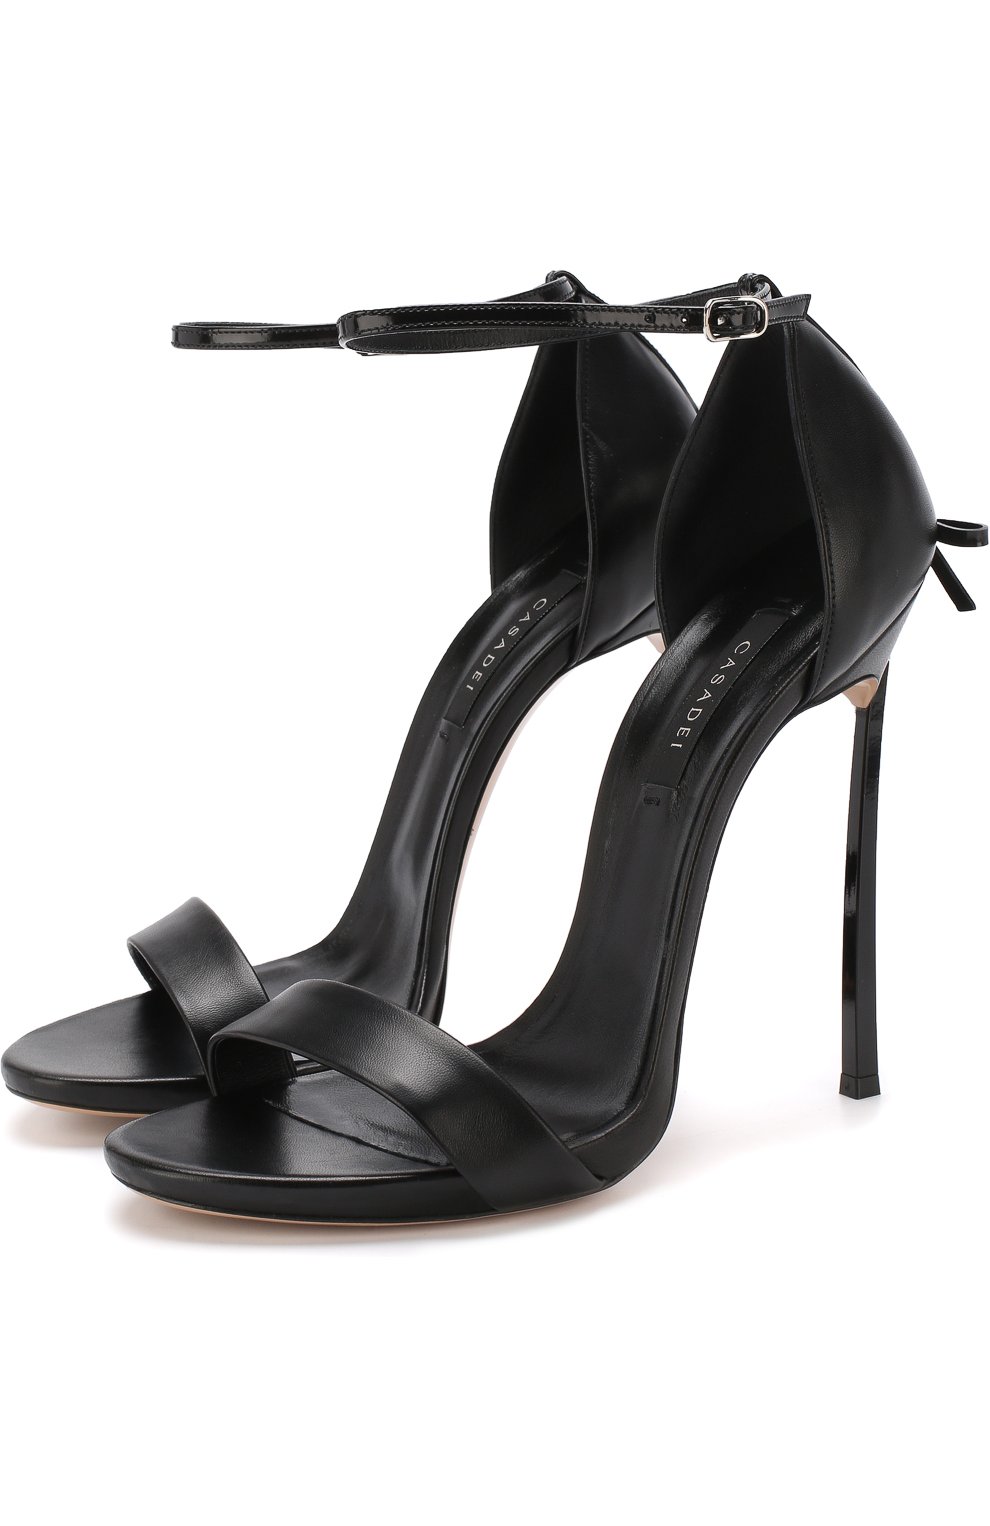 Casadei | Heels, Shoes, Sandals heels